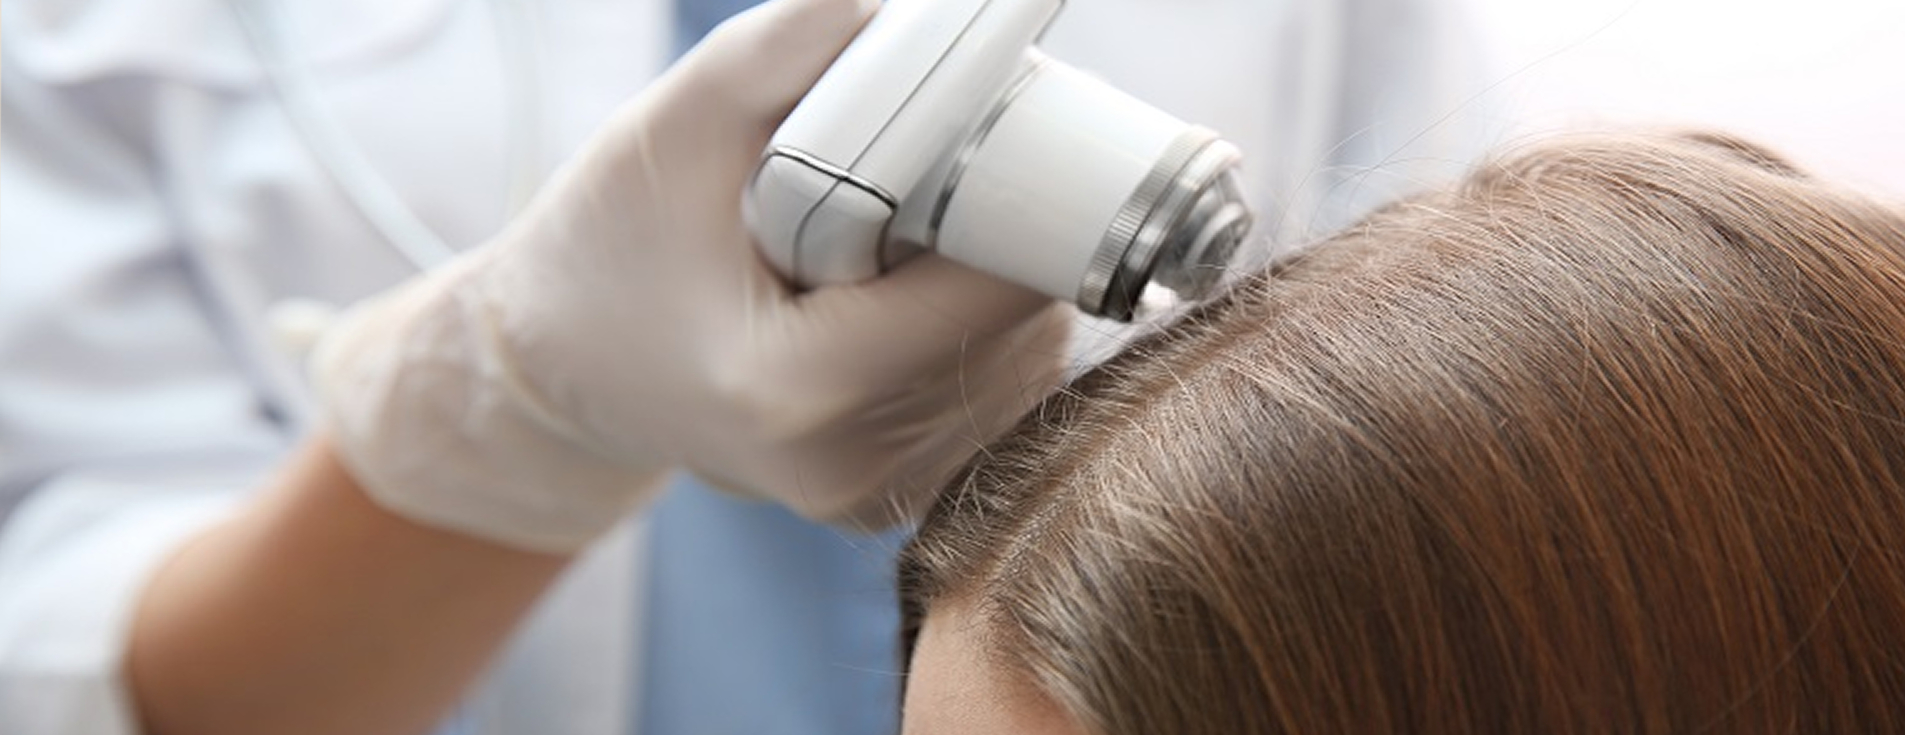 Лечение кожи головы и волос аппаратными методами